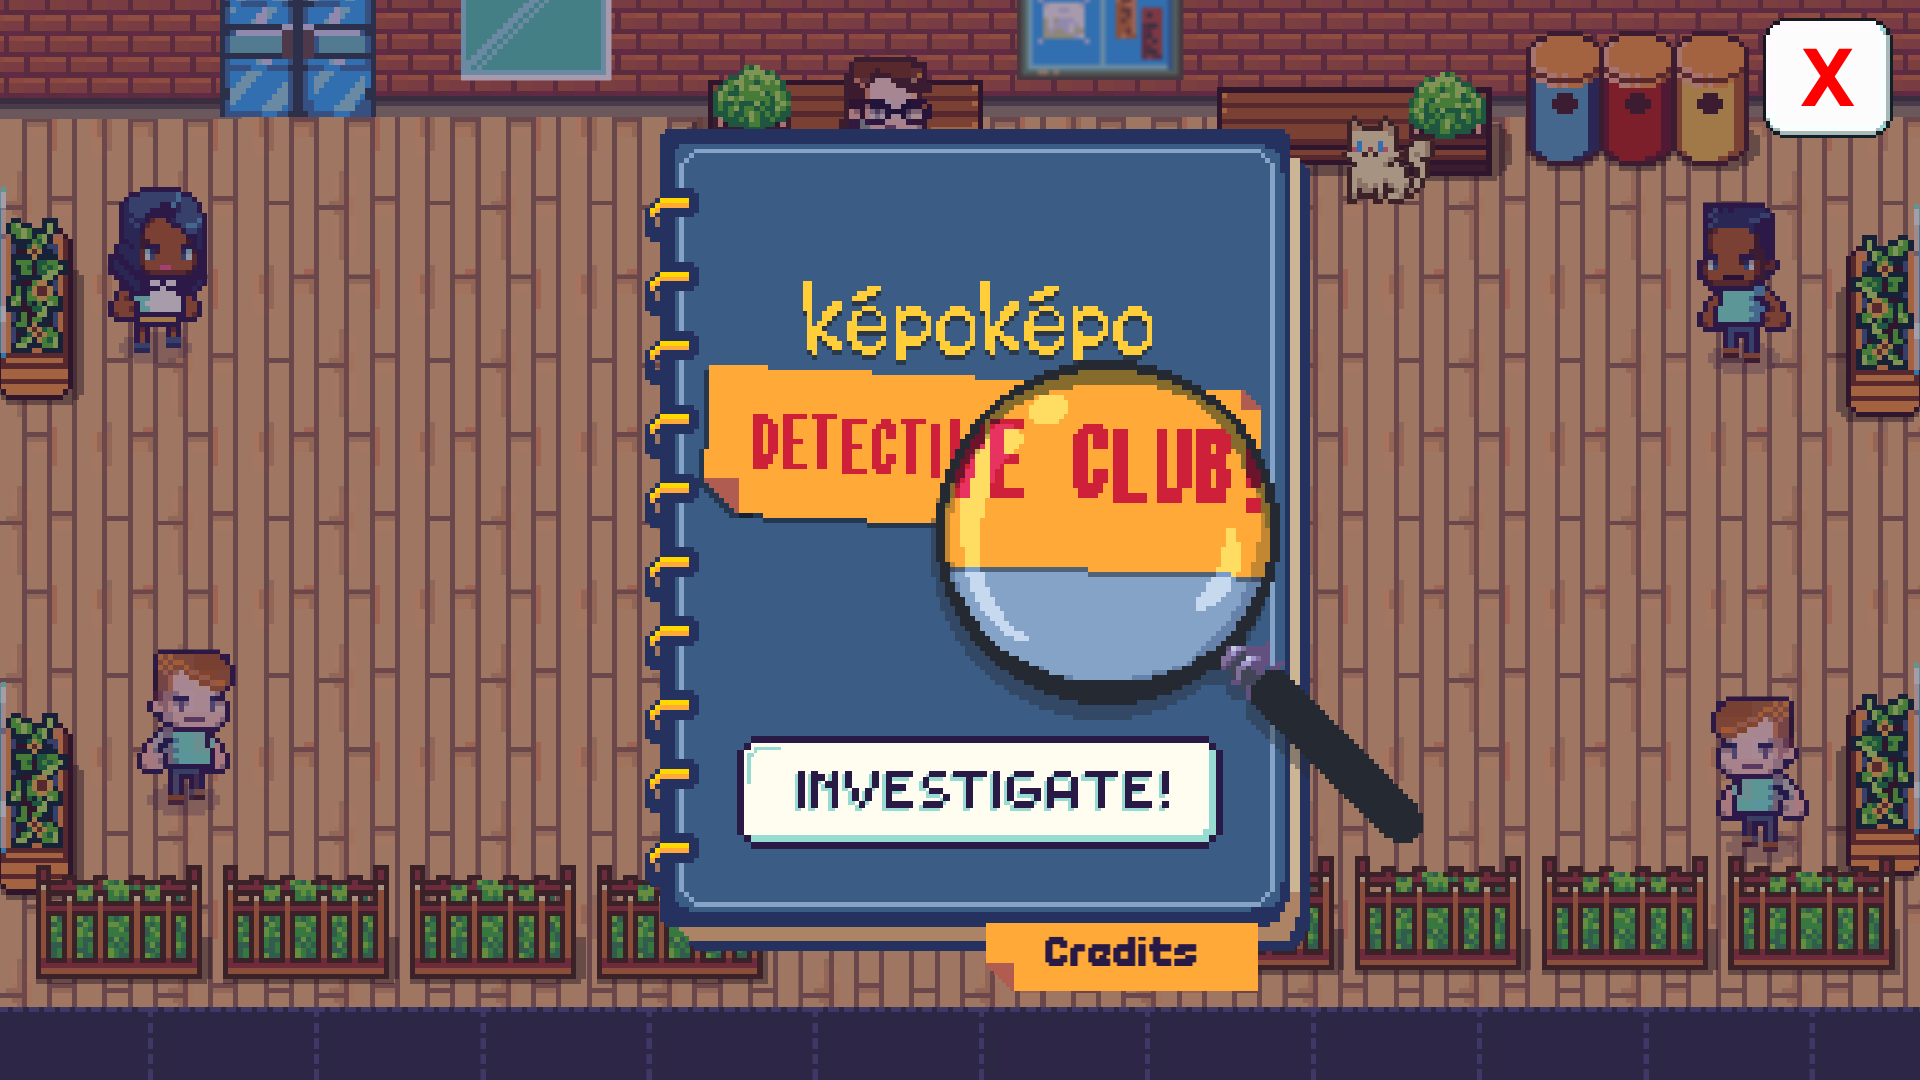 Kepo-Kepo Detective Club